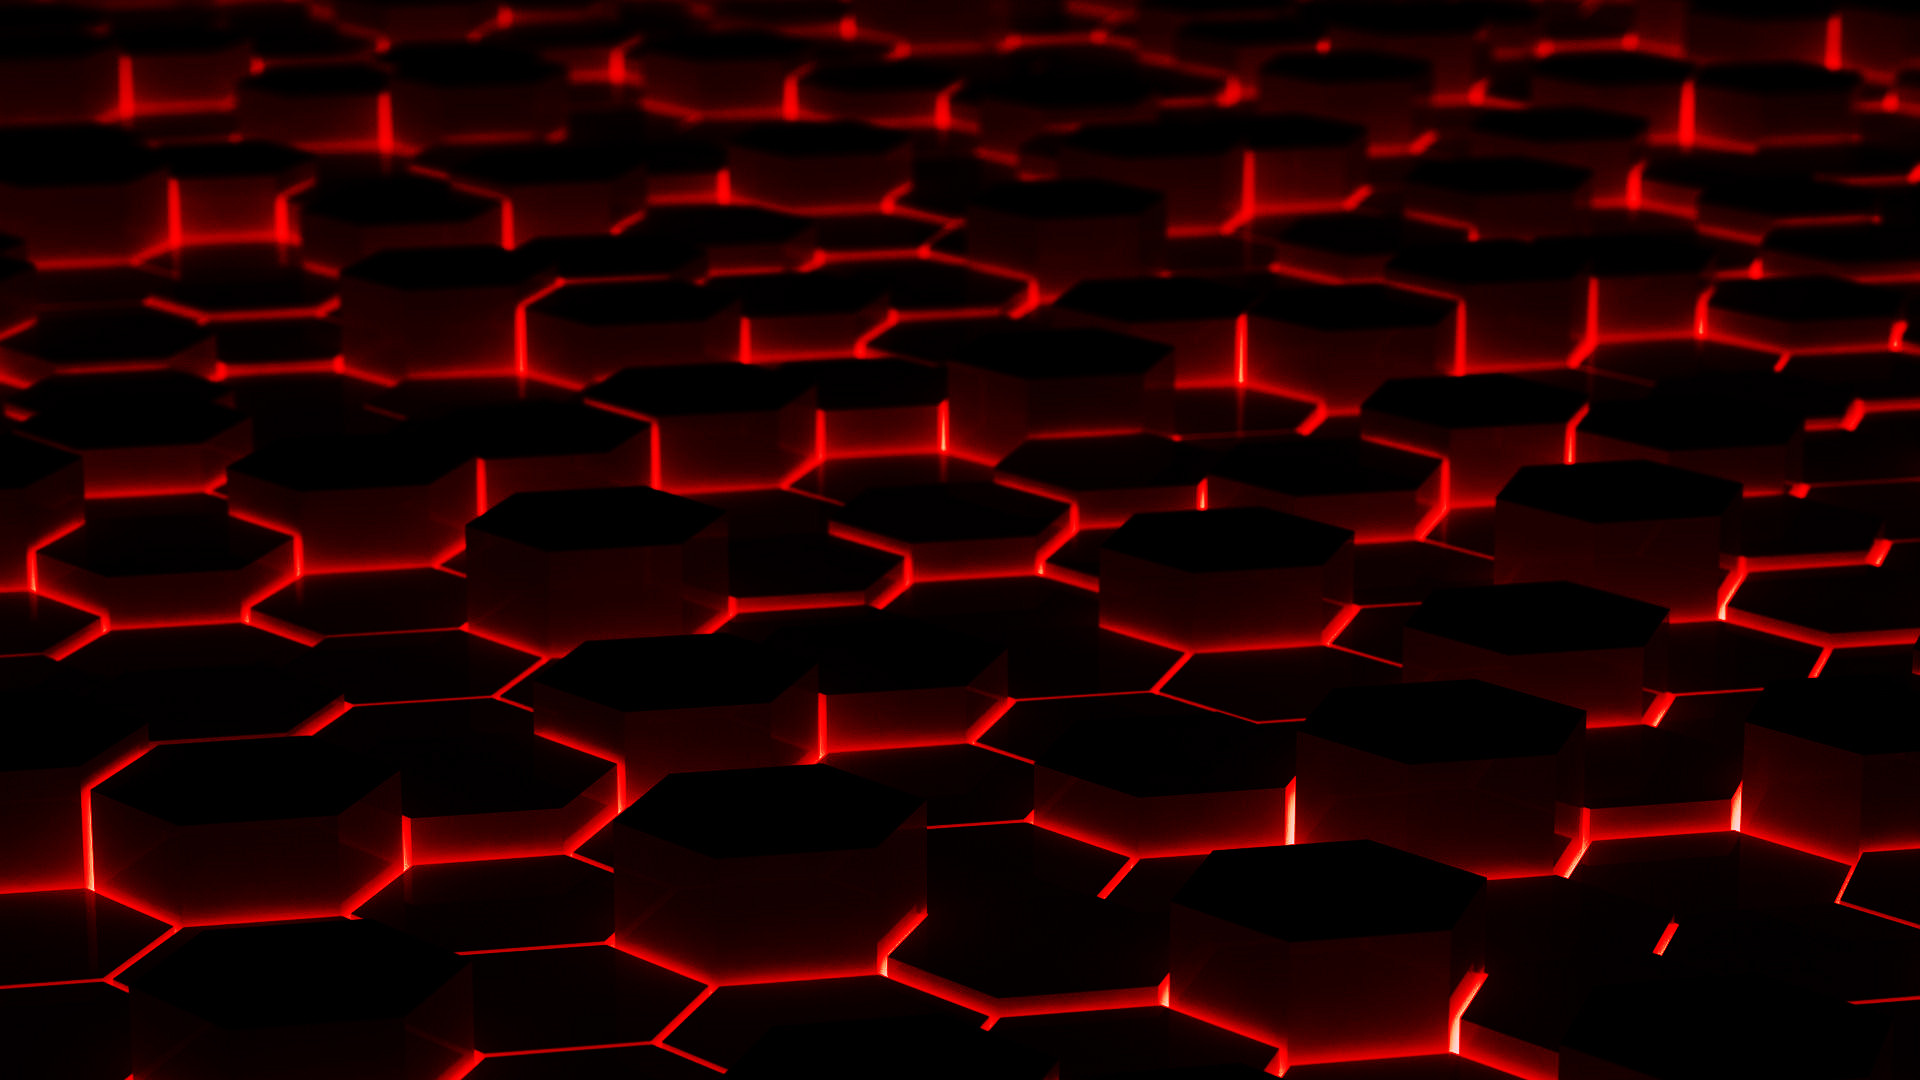 Black and Red Wallpaper: Hòa mình vào vùng đất tối tăm và đầy bí ẩn với những hình ảnh nền Black and Red Wallpaper. Hãy để tâm hồn được thảnh thơi và đắm mình trong không gian đầy màu sắc này.